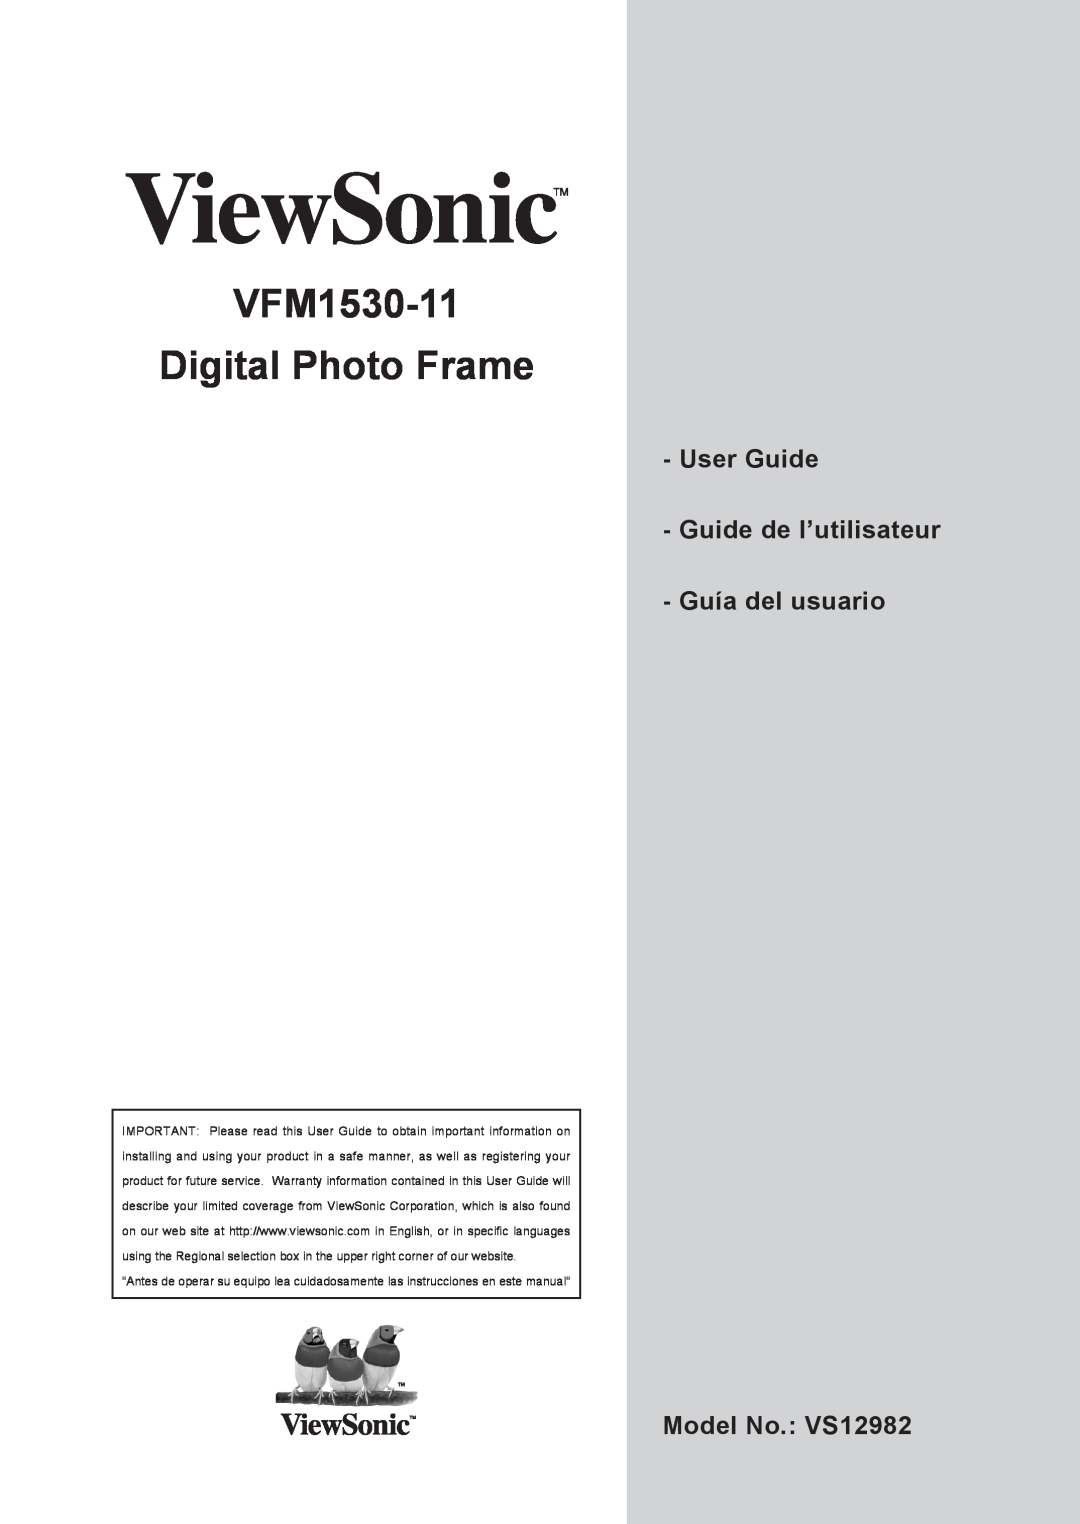 ViewSonic VFM1530-11 warranty User Guide Guide de l’utilisateur - Guía del usuario, Model No. VS12982 